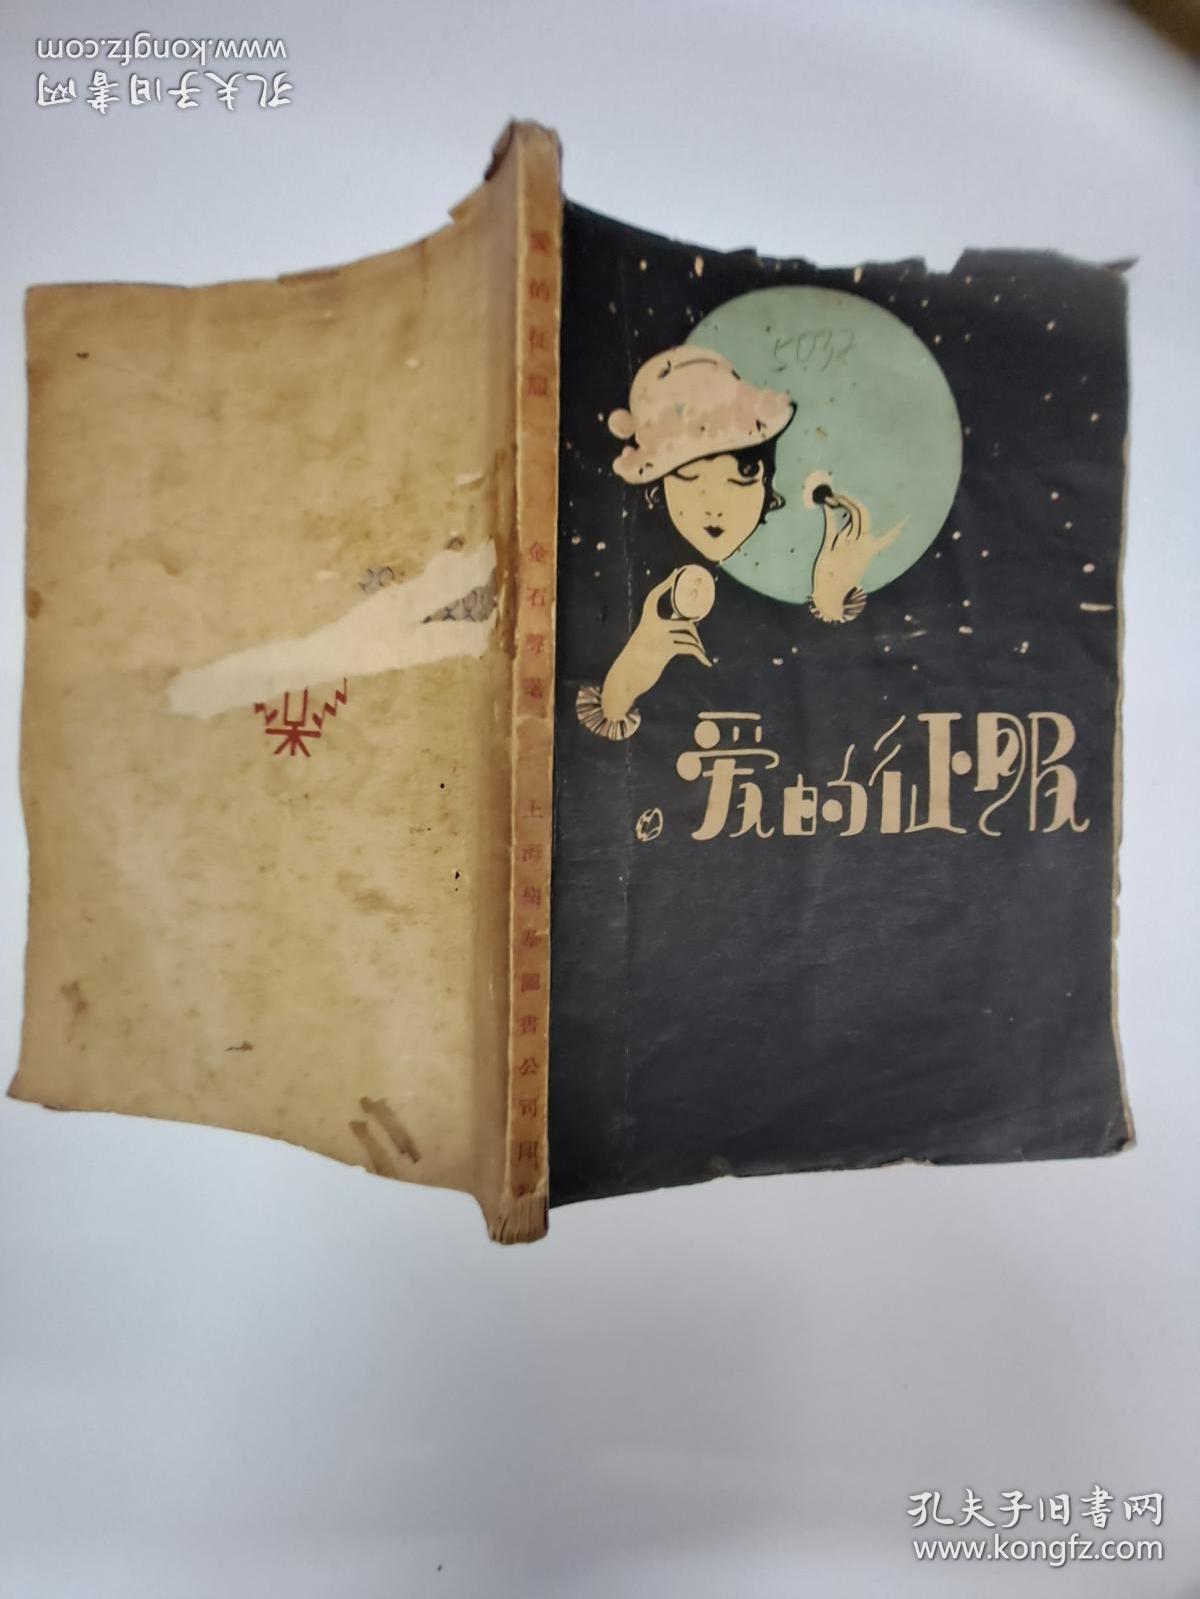 民国原版毛边本孔网唯一《爱的征服》金石声著 1929年11月初版 只印1500册